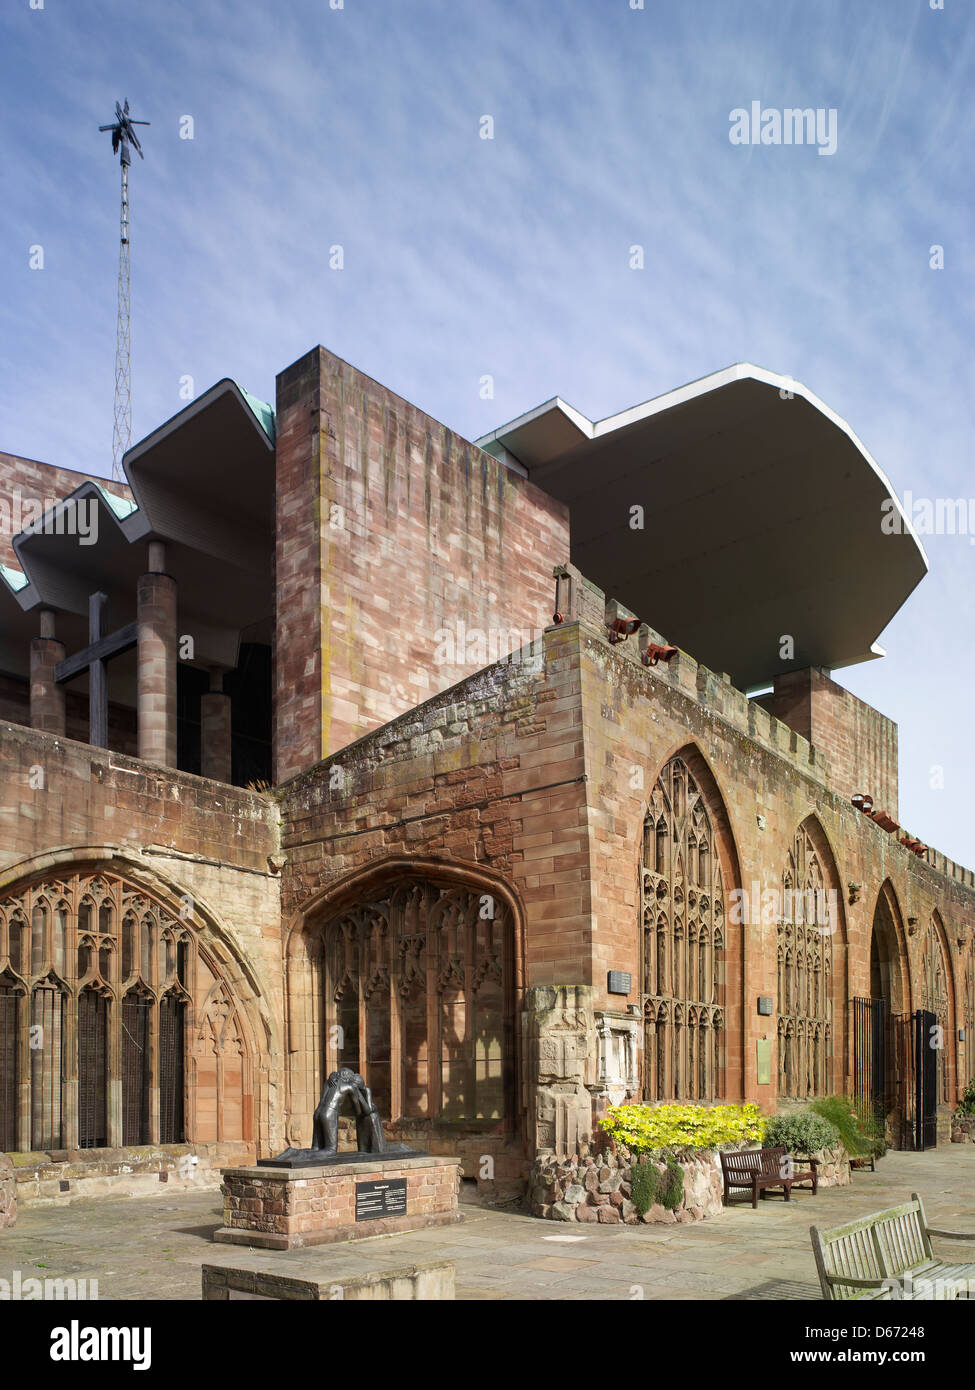 St. Michael Kathedrale, Coventry, England. Ruinen des mittelalterlichen Doms mit Dach 1962 Kathedrale von Sir Basil Spence Stockfoto